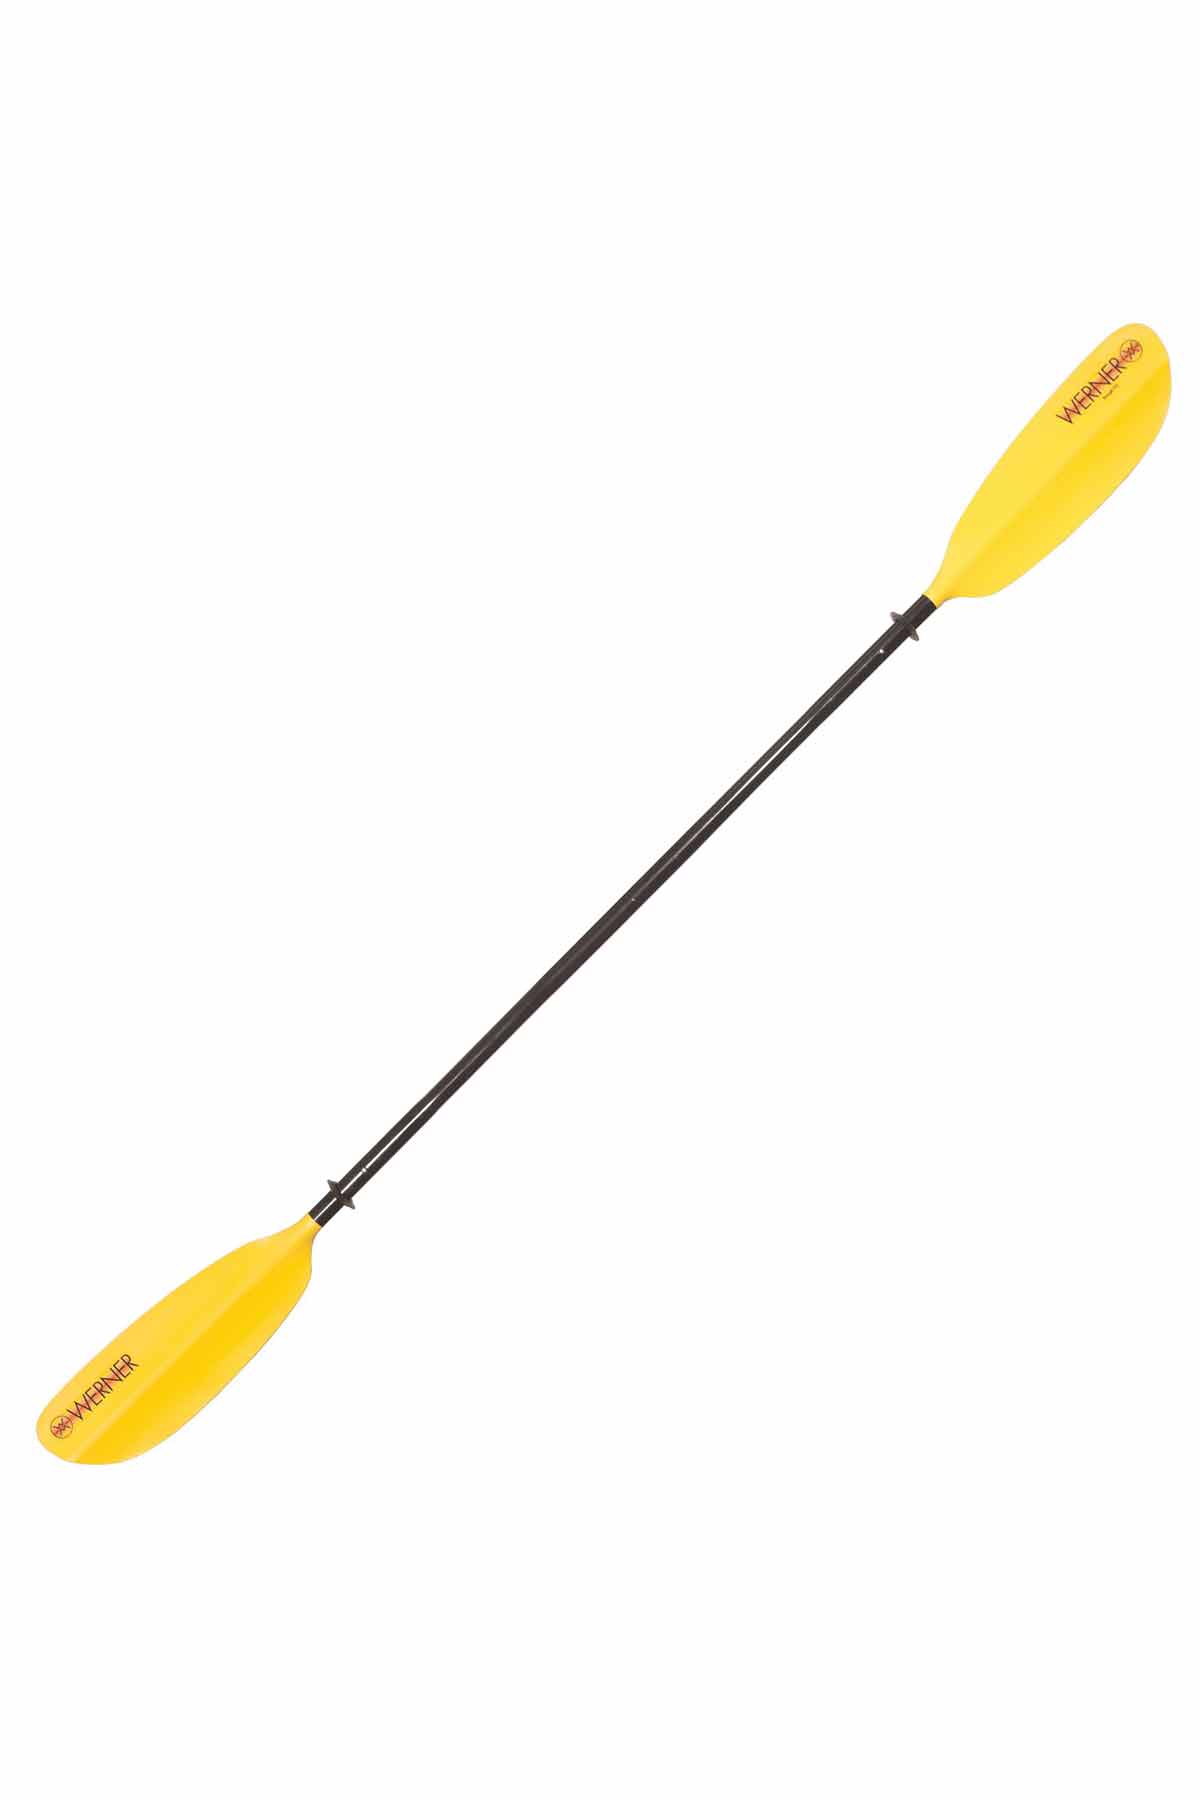 Werner Skagit Kayak Paddle